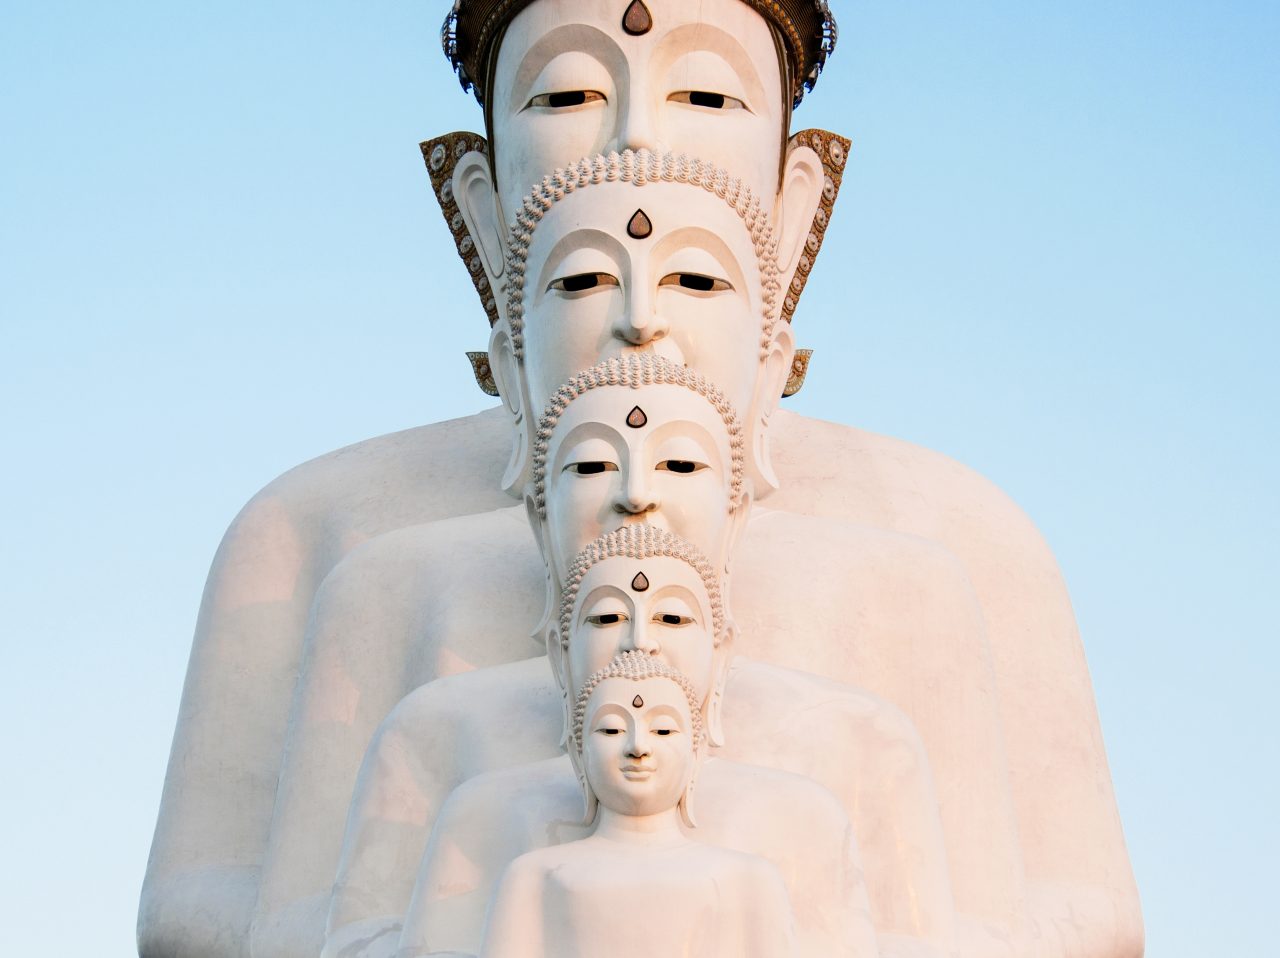 Thailand Buddha Statues